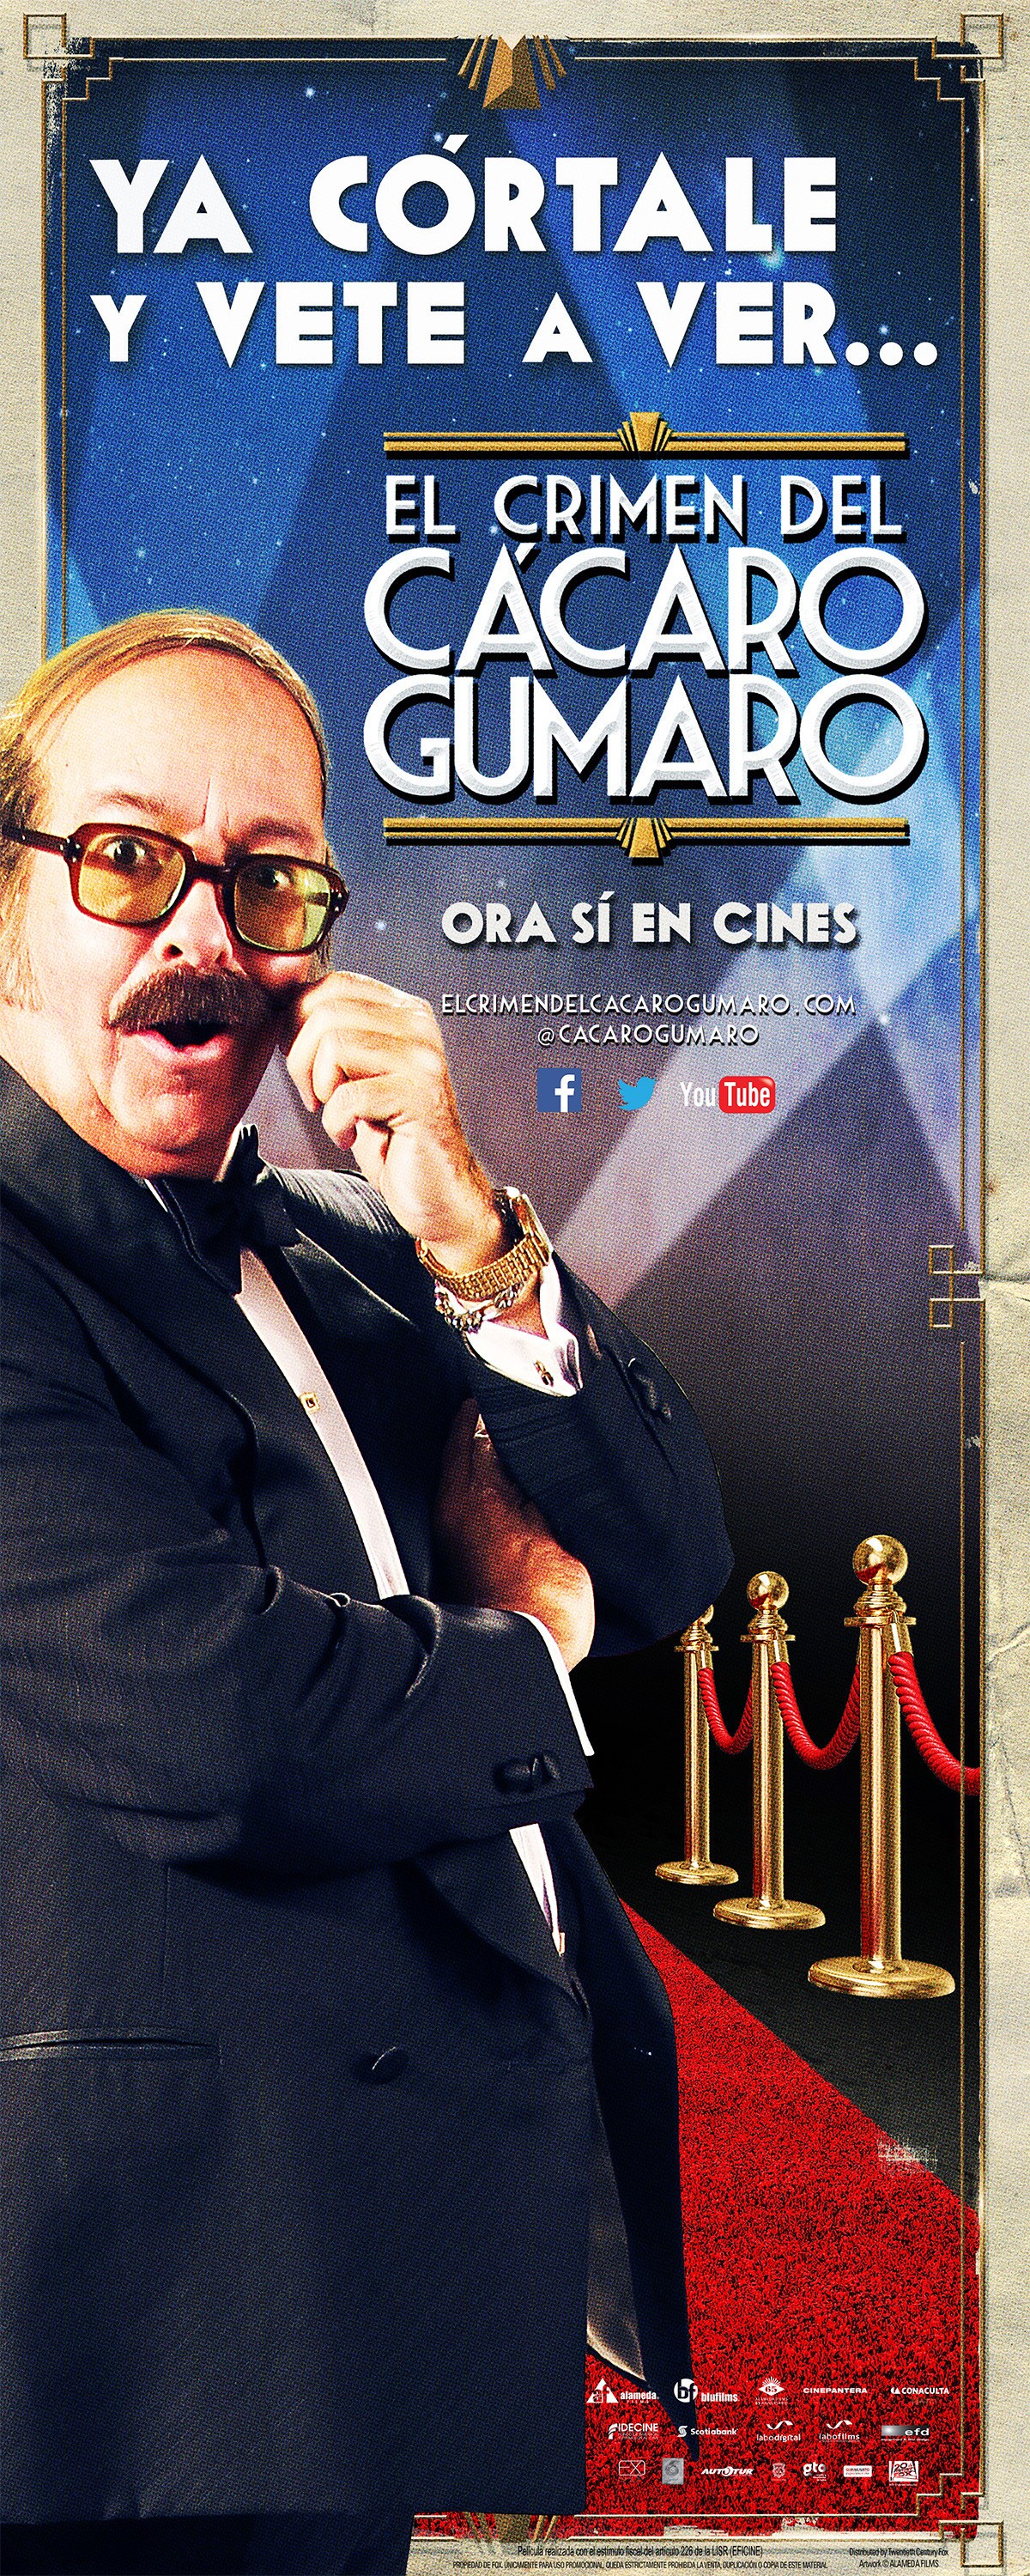 Mega Sized Movie Poster Image for El Crimen del Cacaro Gumaro (#9 of 12)